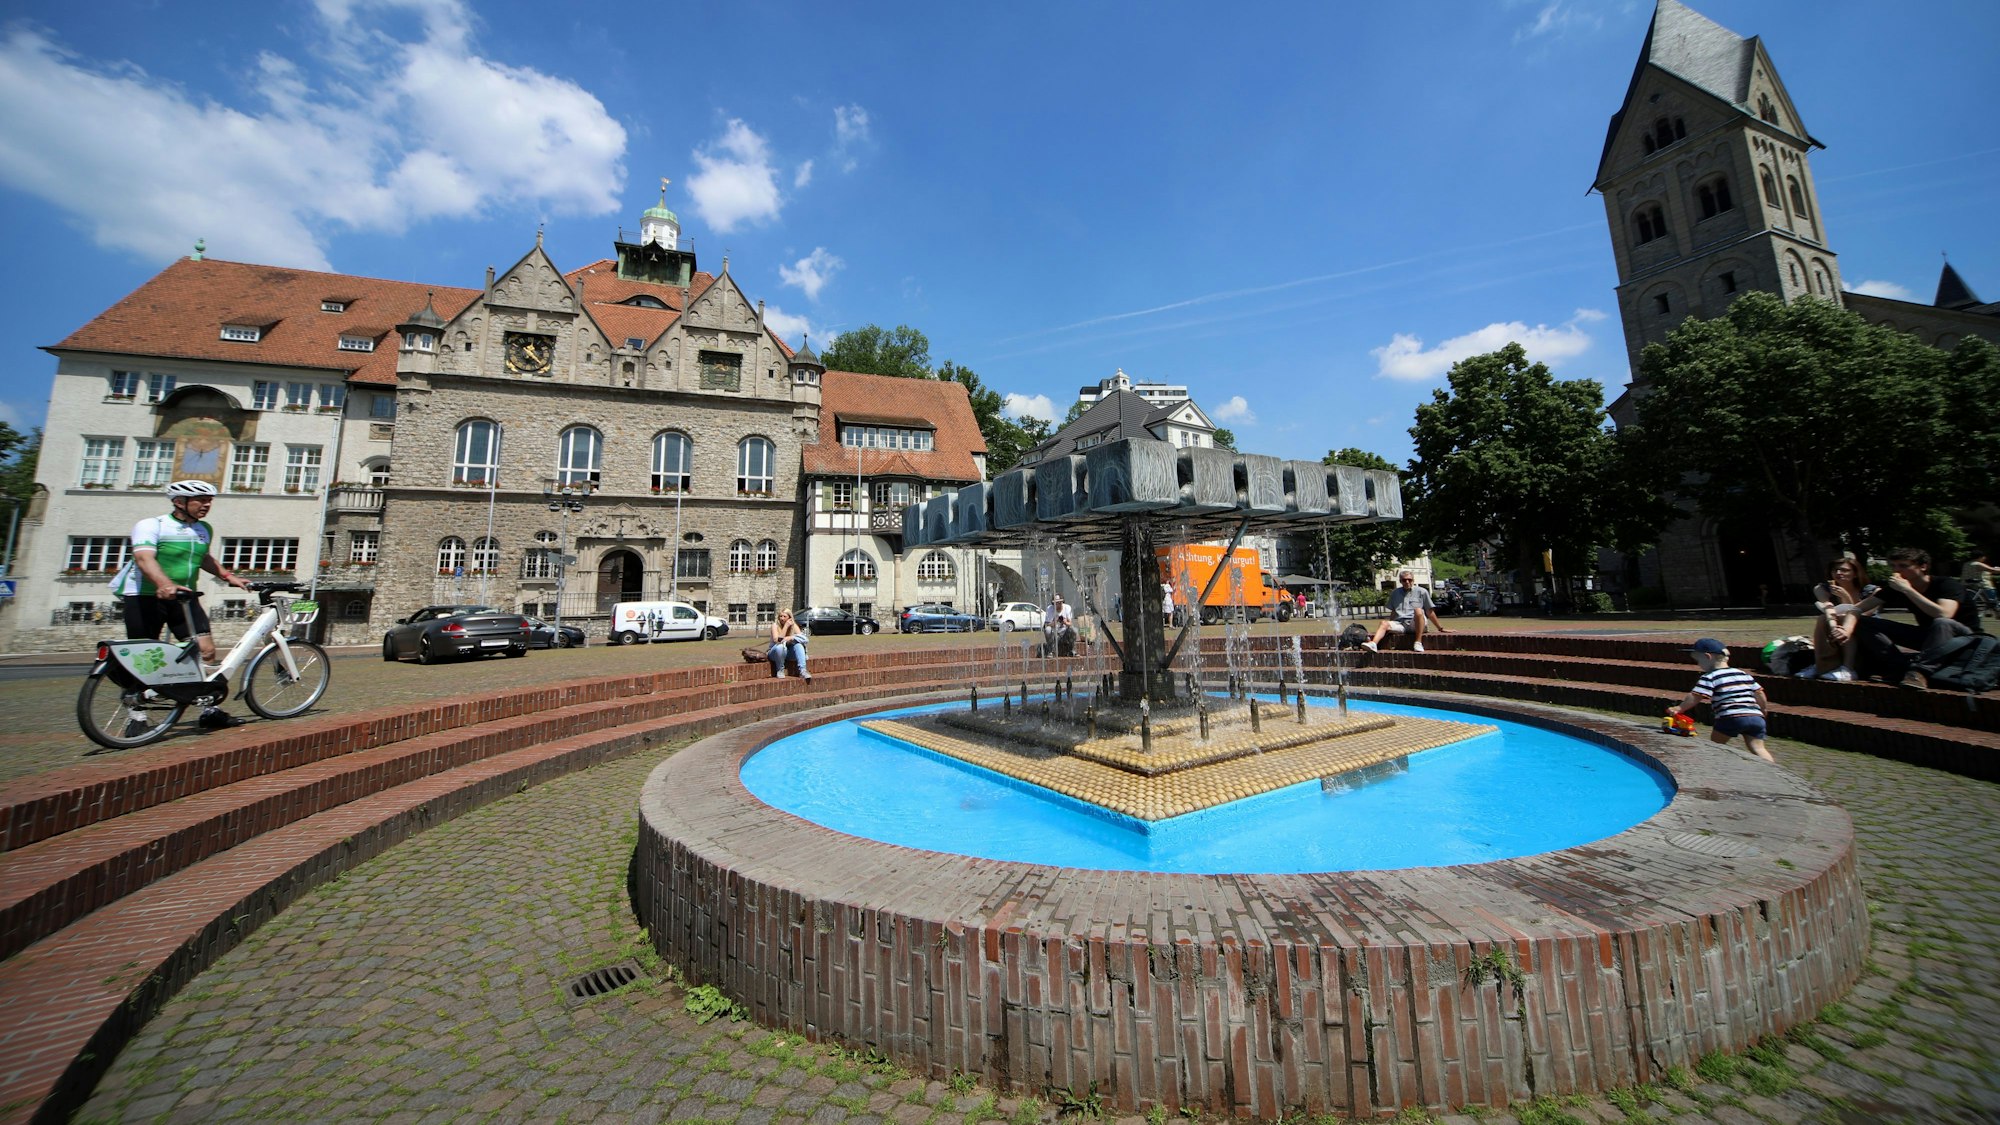 Bergisch Glddbach, Konrad-Adenauer-Platz, Waffeleisen-Brunnen, Rathaus, St. Laurentius, Wirtshaus am Bock